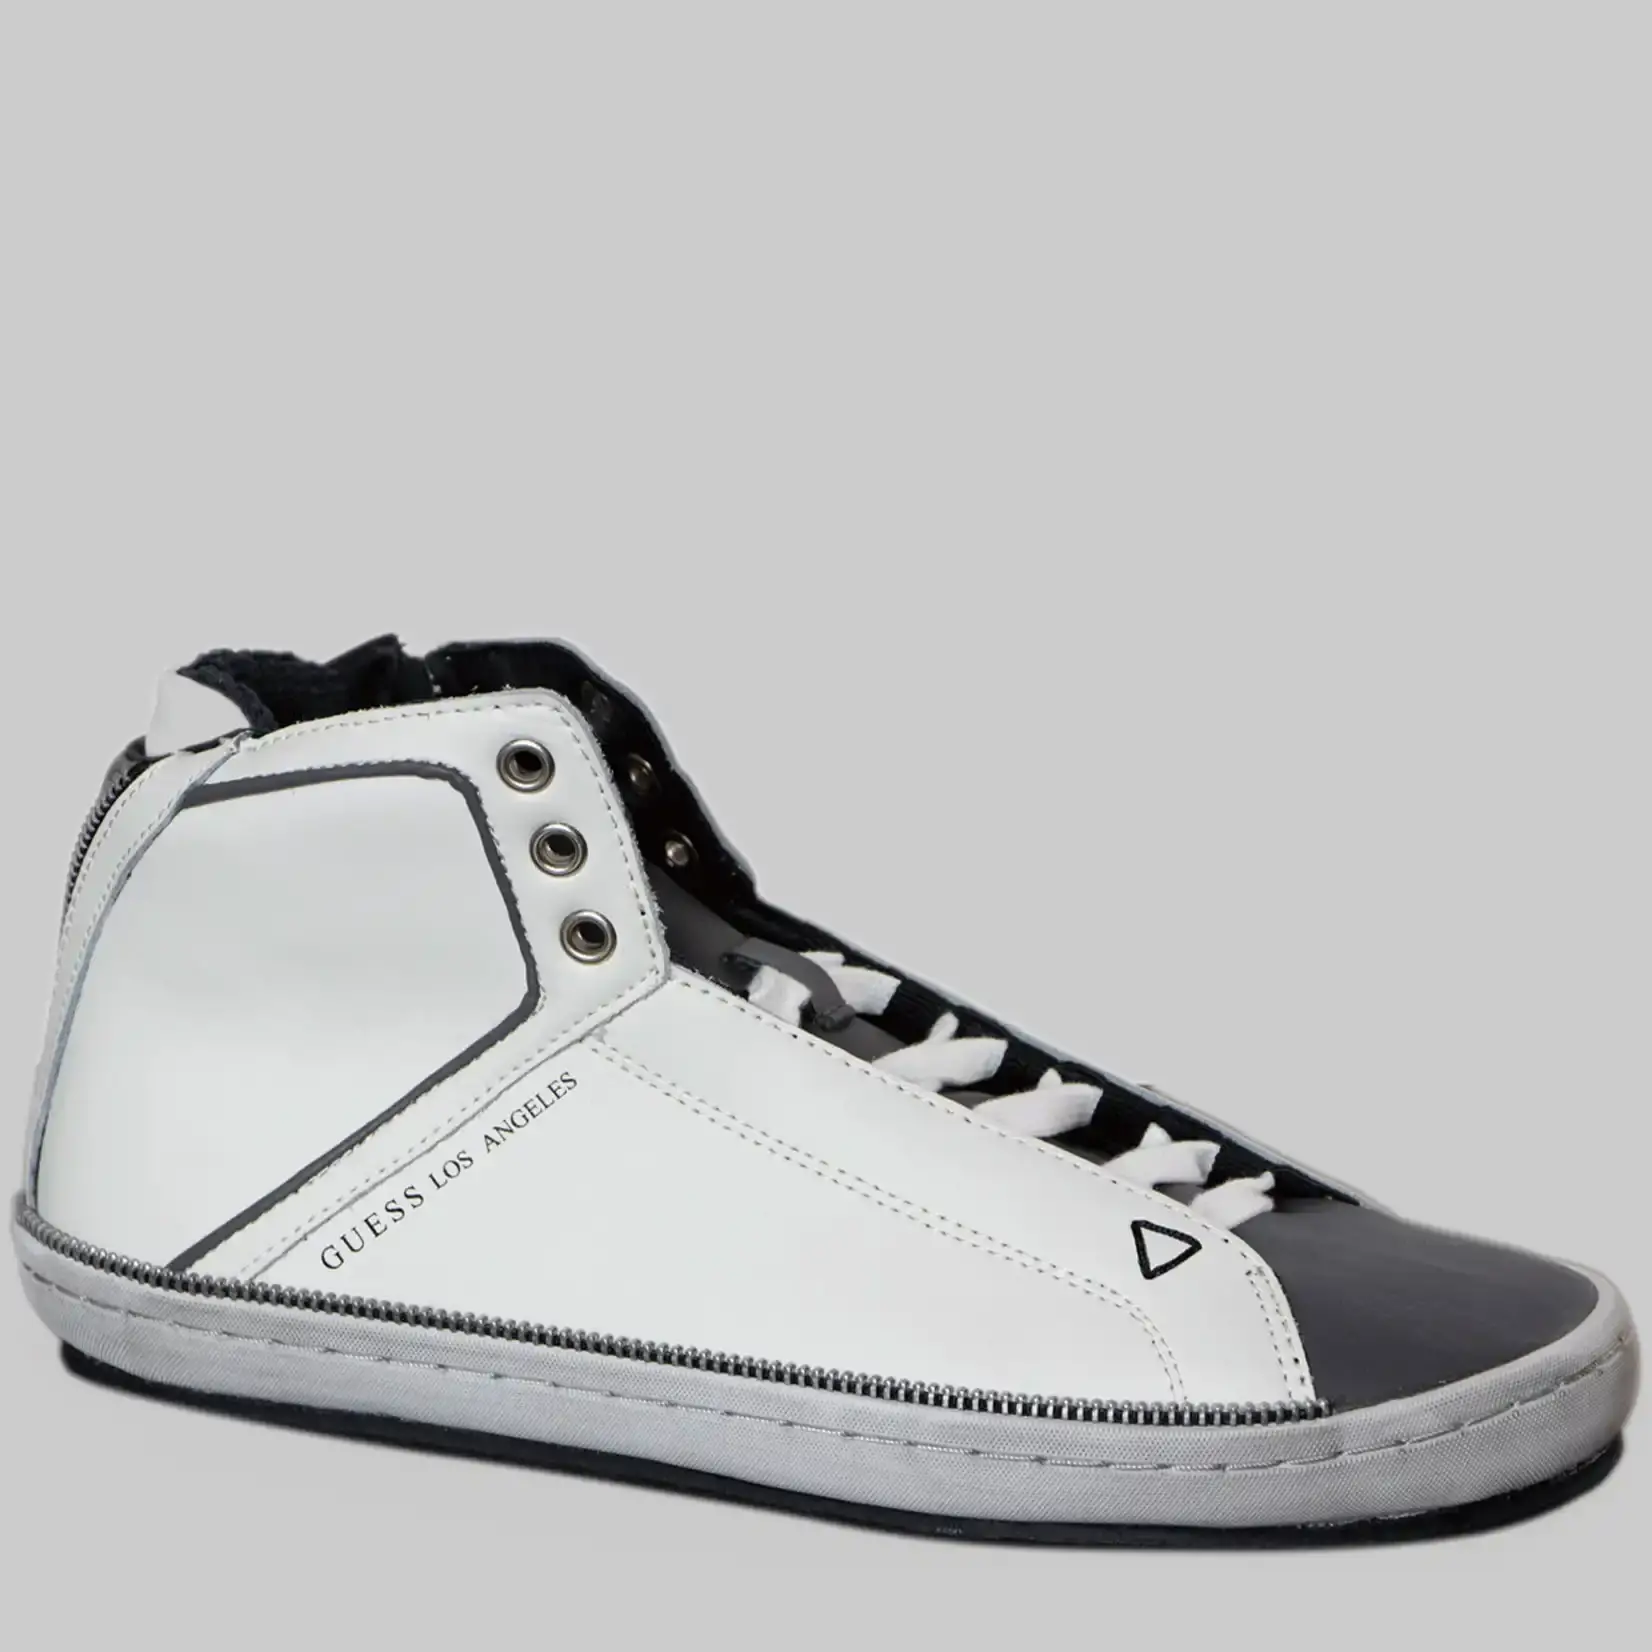 Guess Sneaker Herren Leder - Schwarz Weiß - Seitlicher Zipper, Vintage Effekt - Schnürsenkel